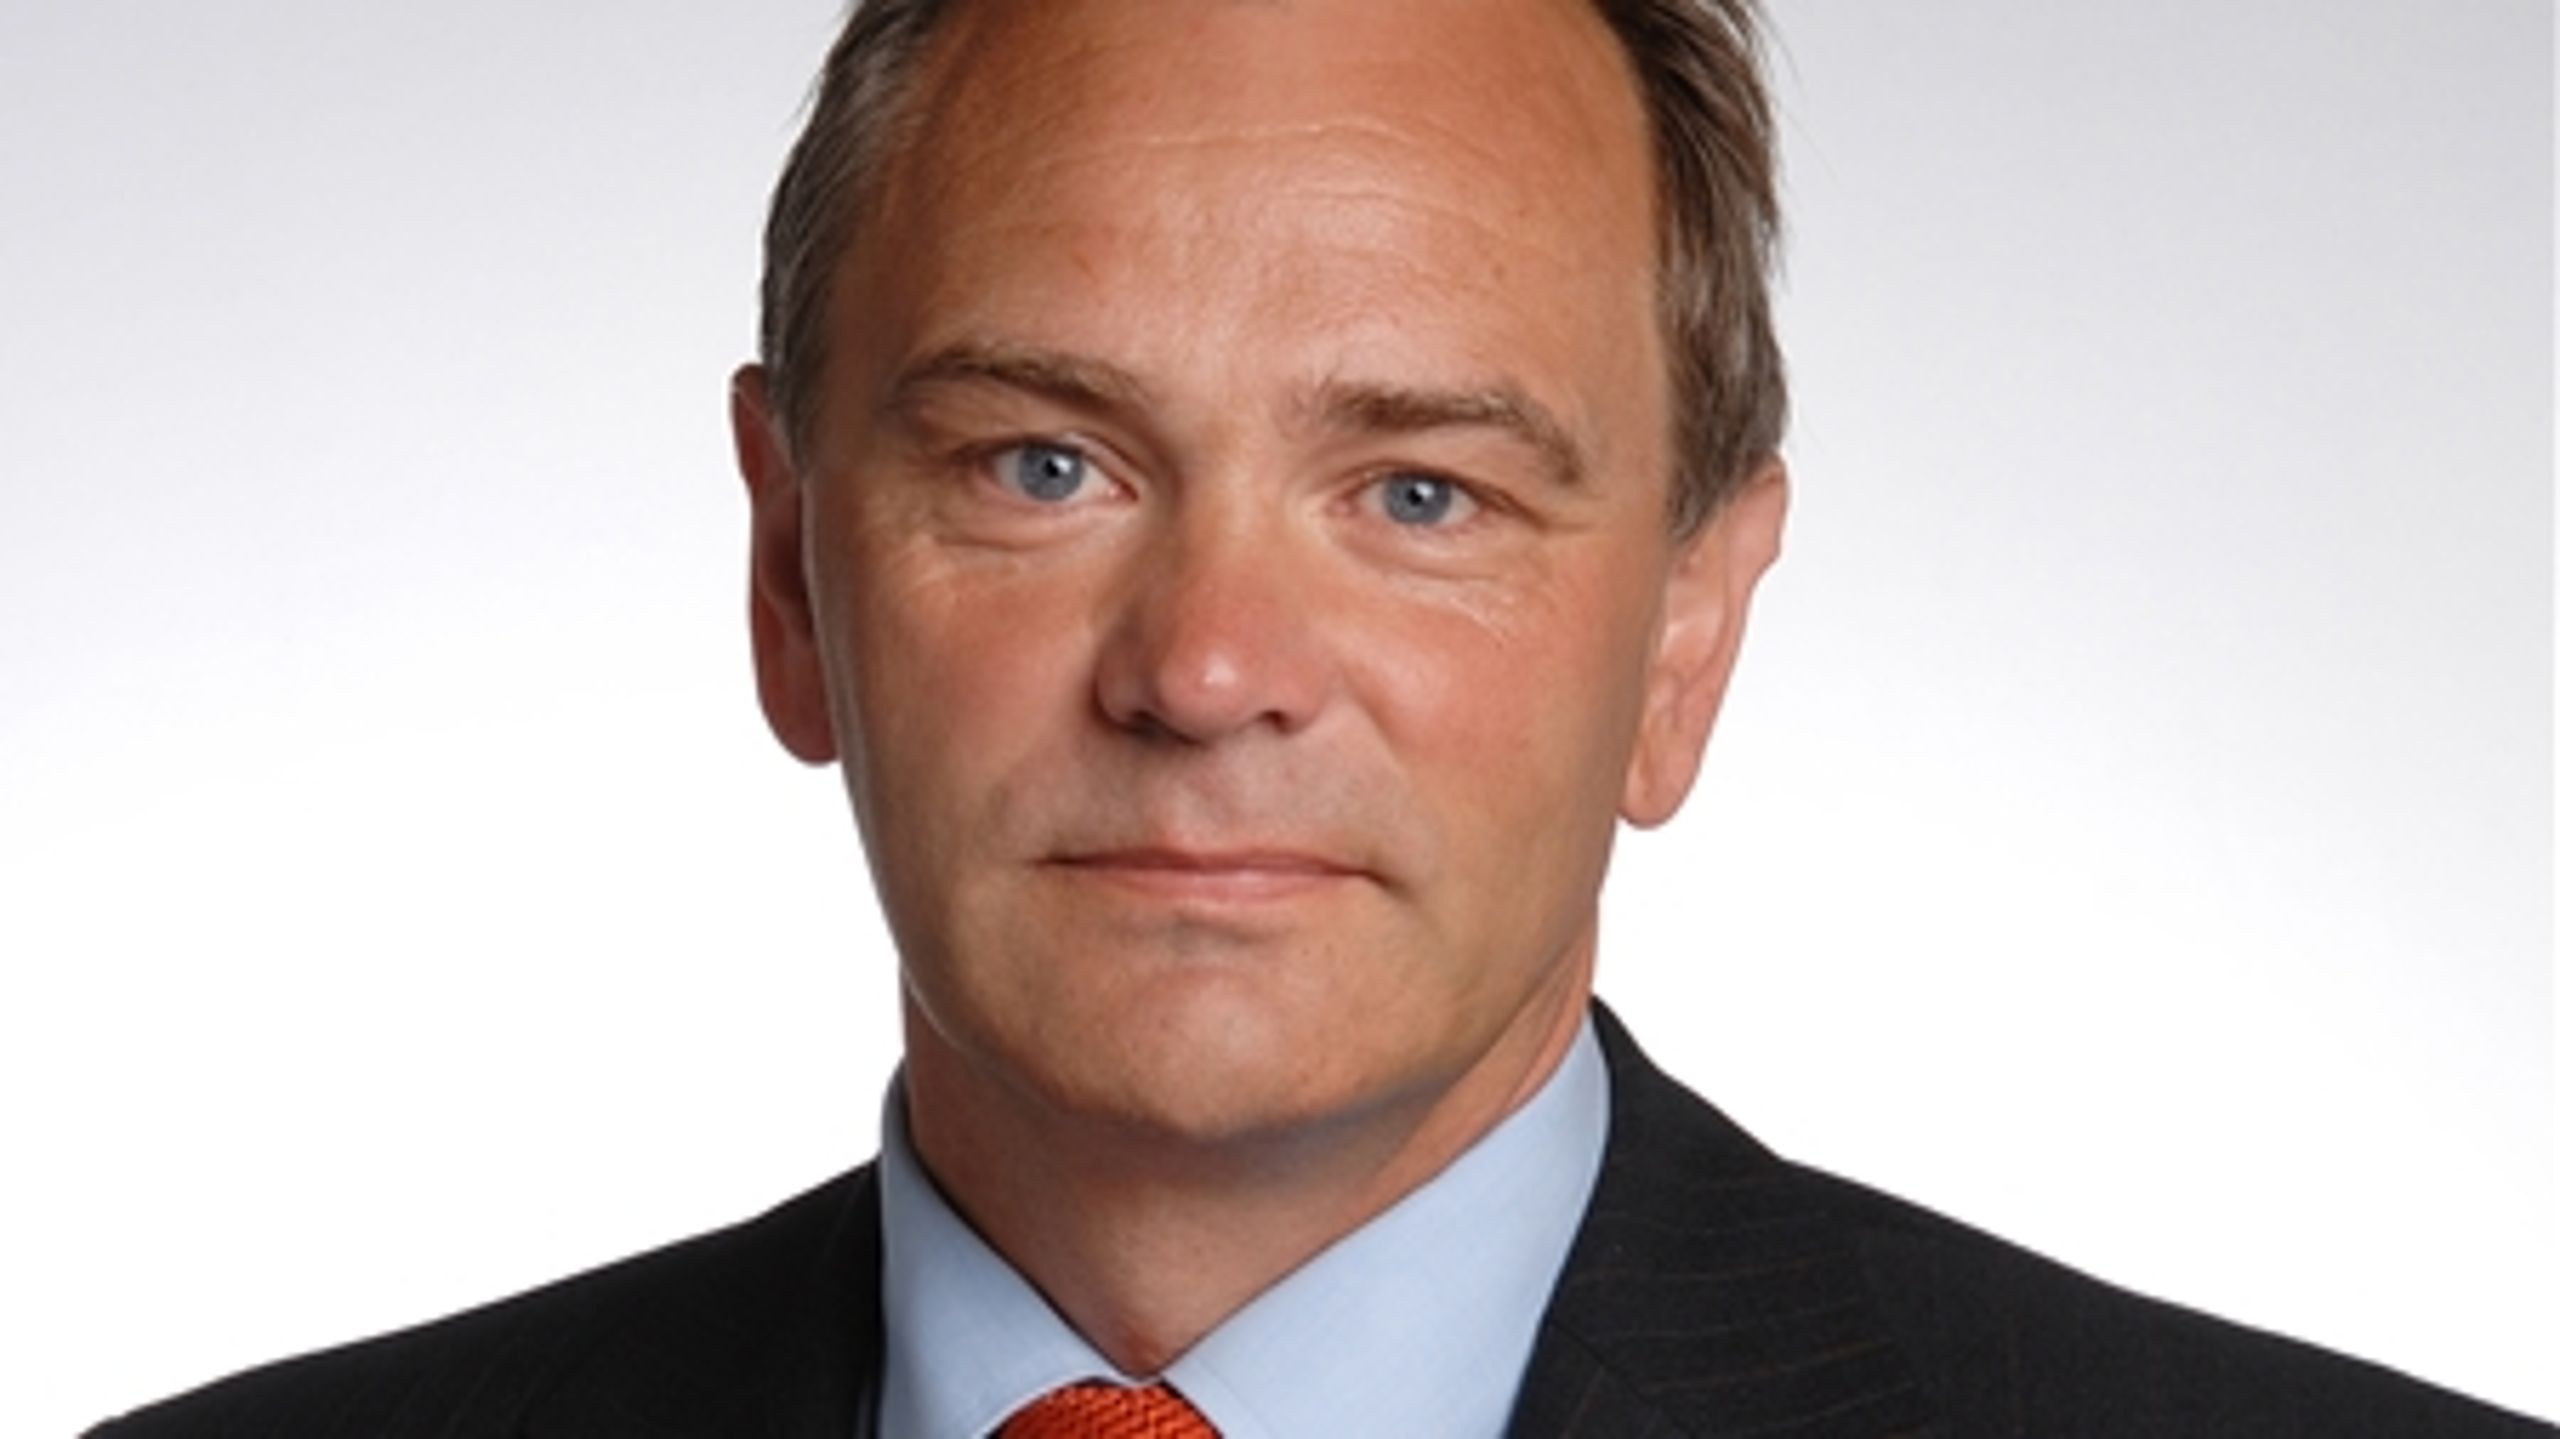 Tidligere KL-formand Jan Trøjborg (S) faldt om af et hjertetilfælde under et cykelløb i Horsens. Han blev 56 år gammel.